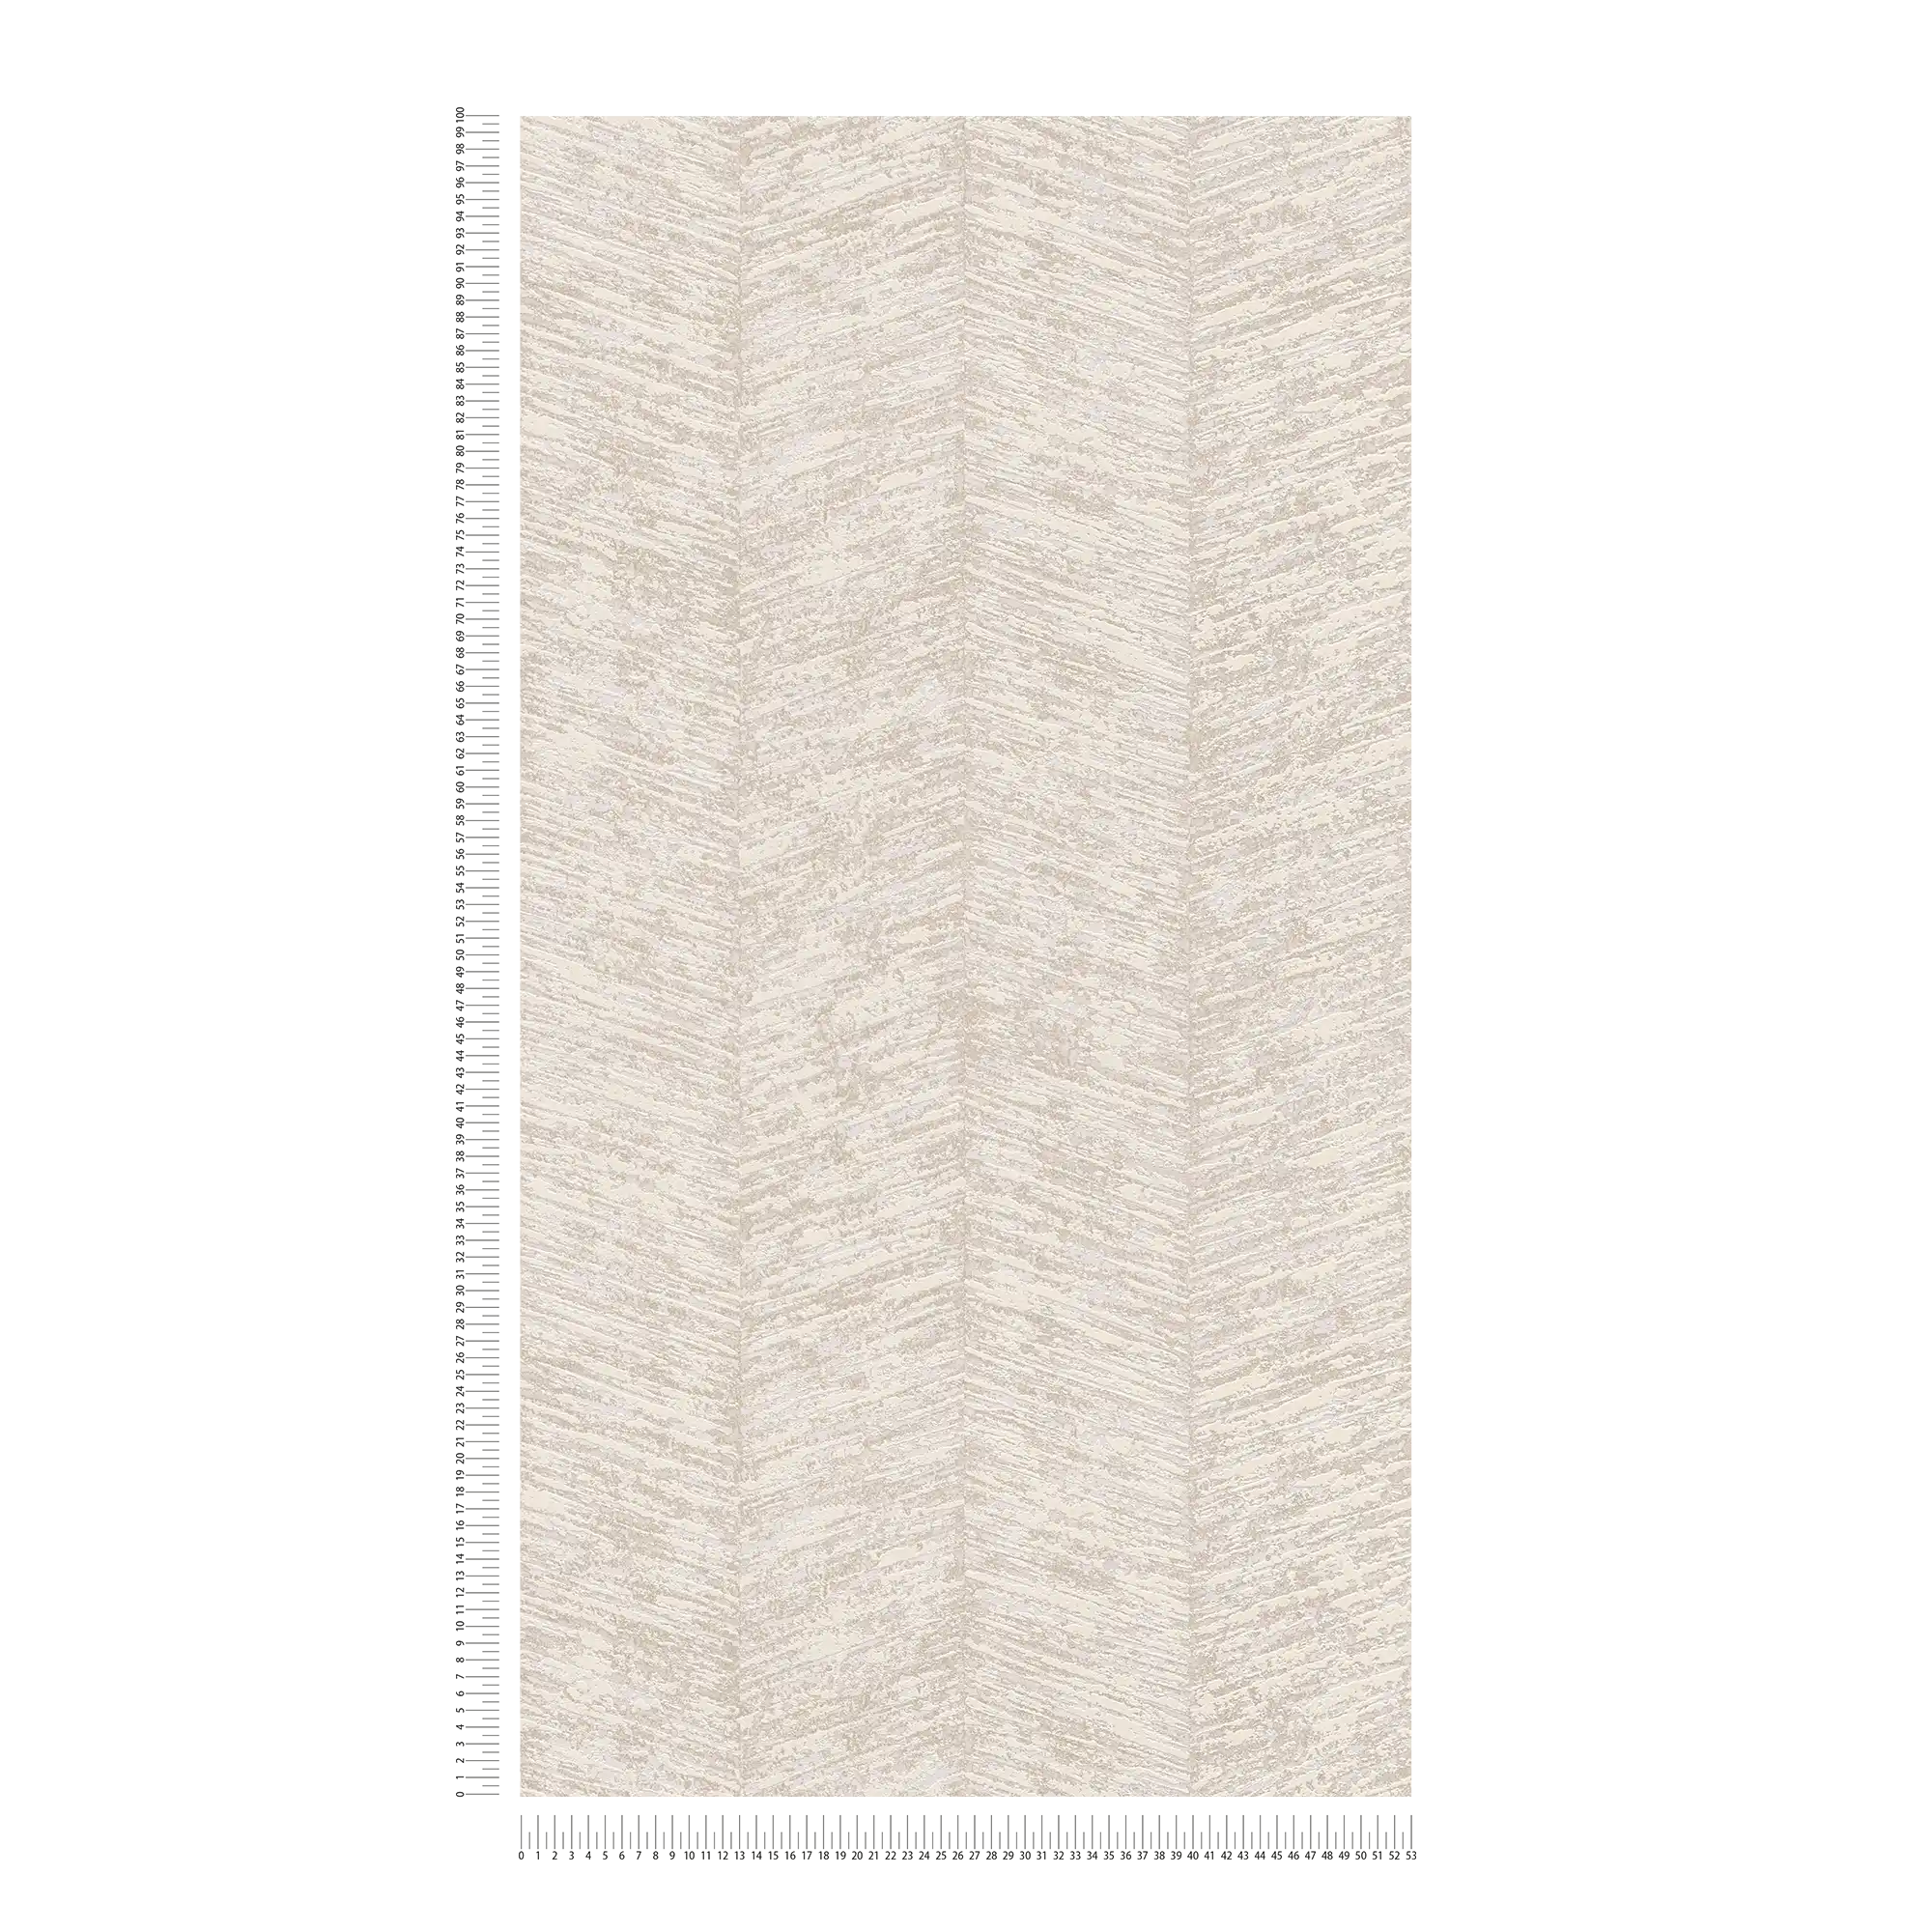             papel pintado texturizado de diseño étnico con efecto de rayas - crema, metálico, beige
        